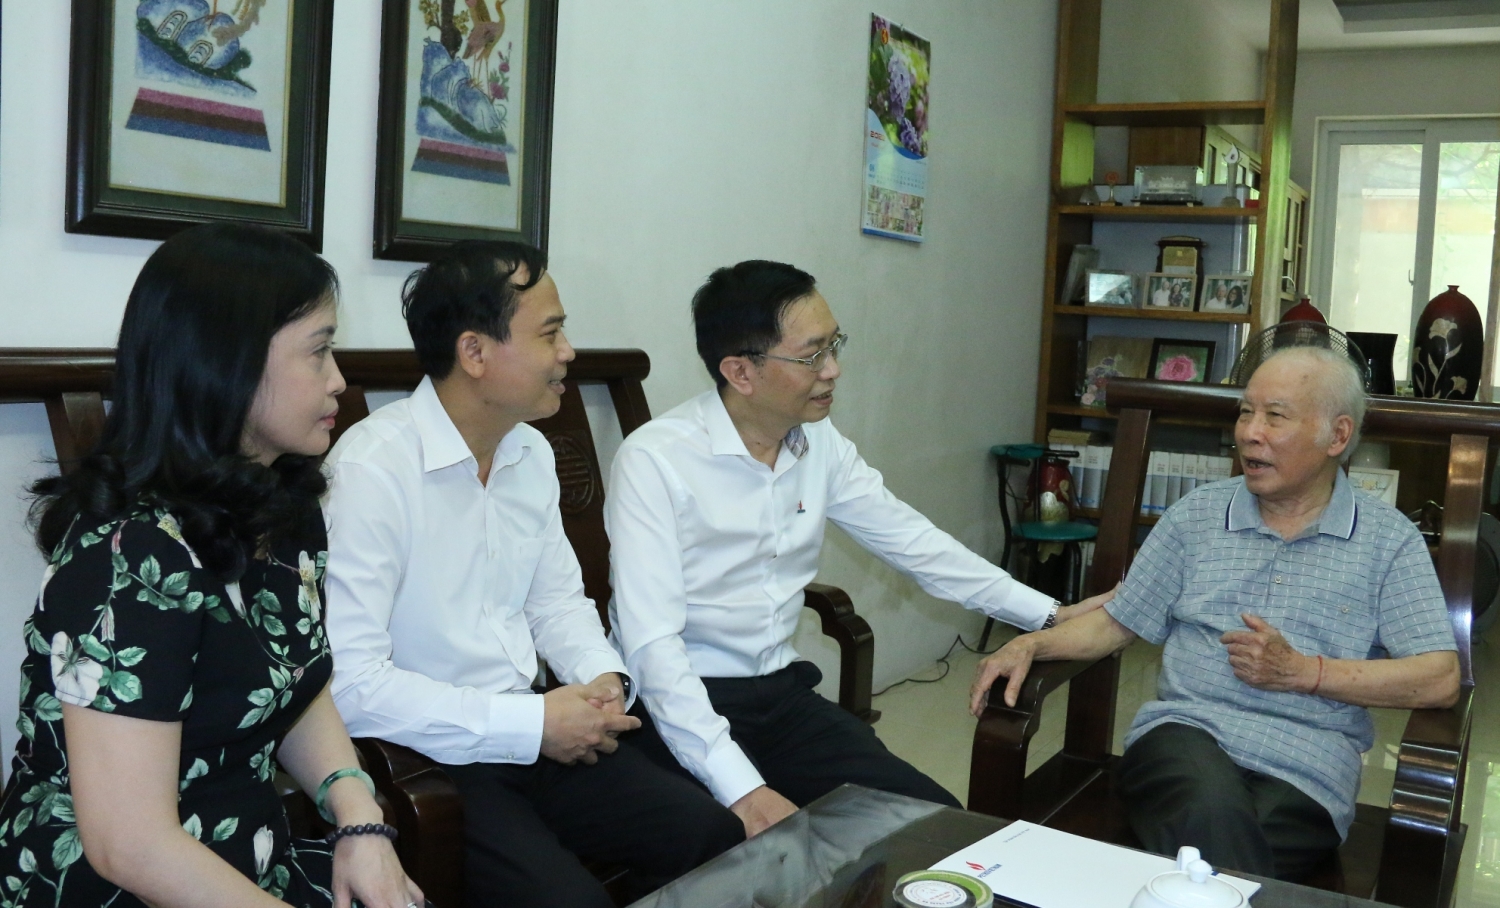 Đoàn công tác thăm hỏi và chúc sức khoẻ đồng chí Hồ Tế - nguyên Bộ trưởng Bộ Tài chính, nguyên Chủ tịch HĐQT Tổng Công ty Dầu khí Việt Nam nay là Tập đoàn Dầu khí Việt Nam